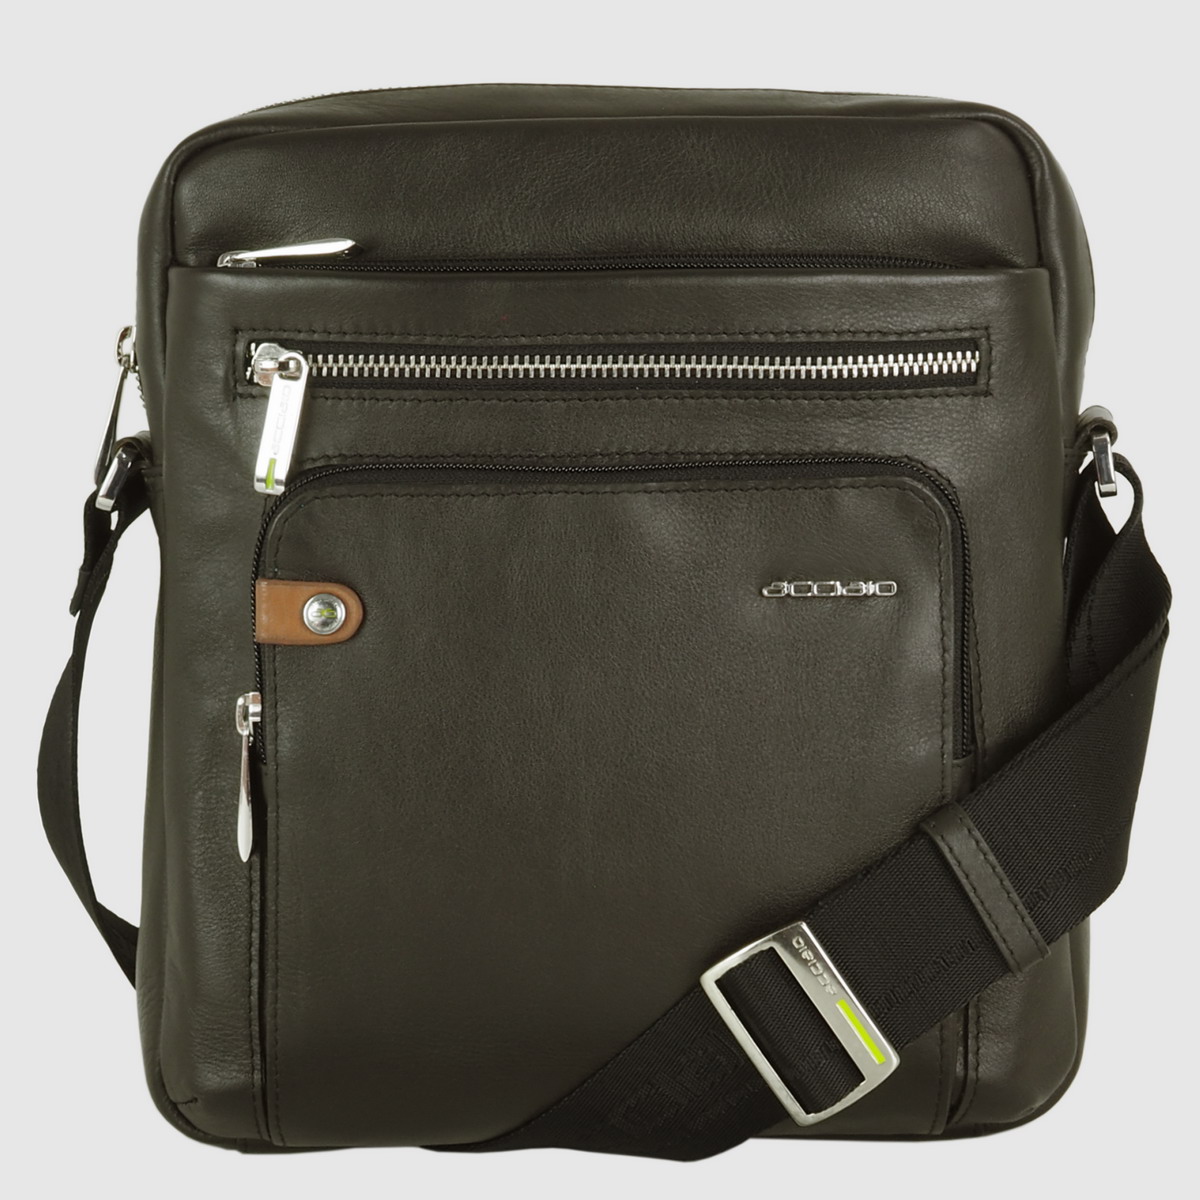 men's shoulder bag large in leather brown